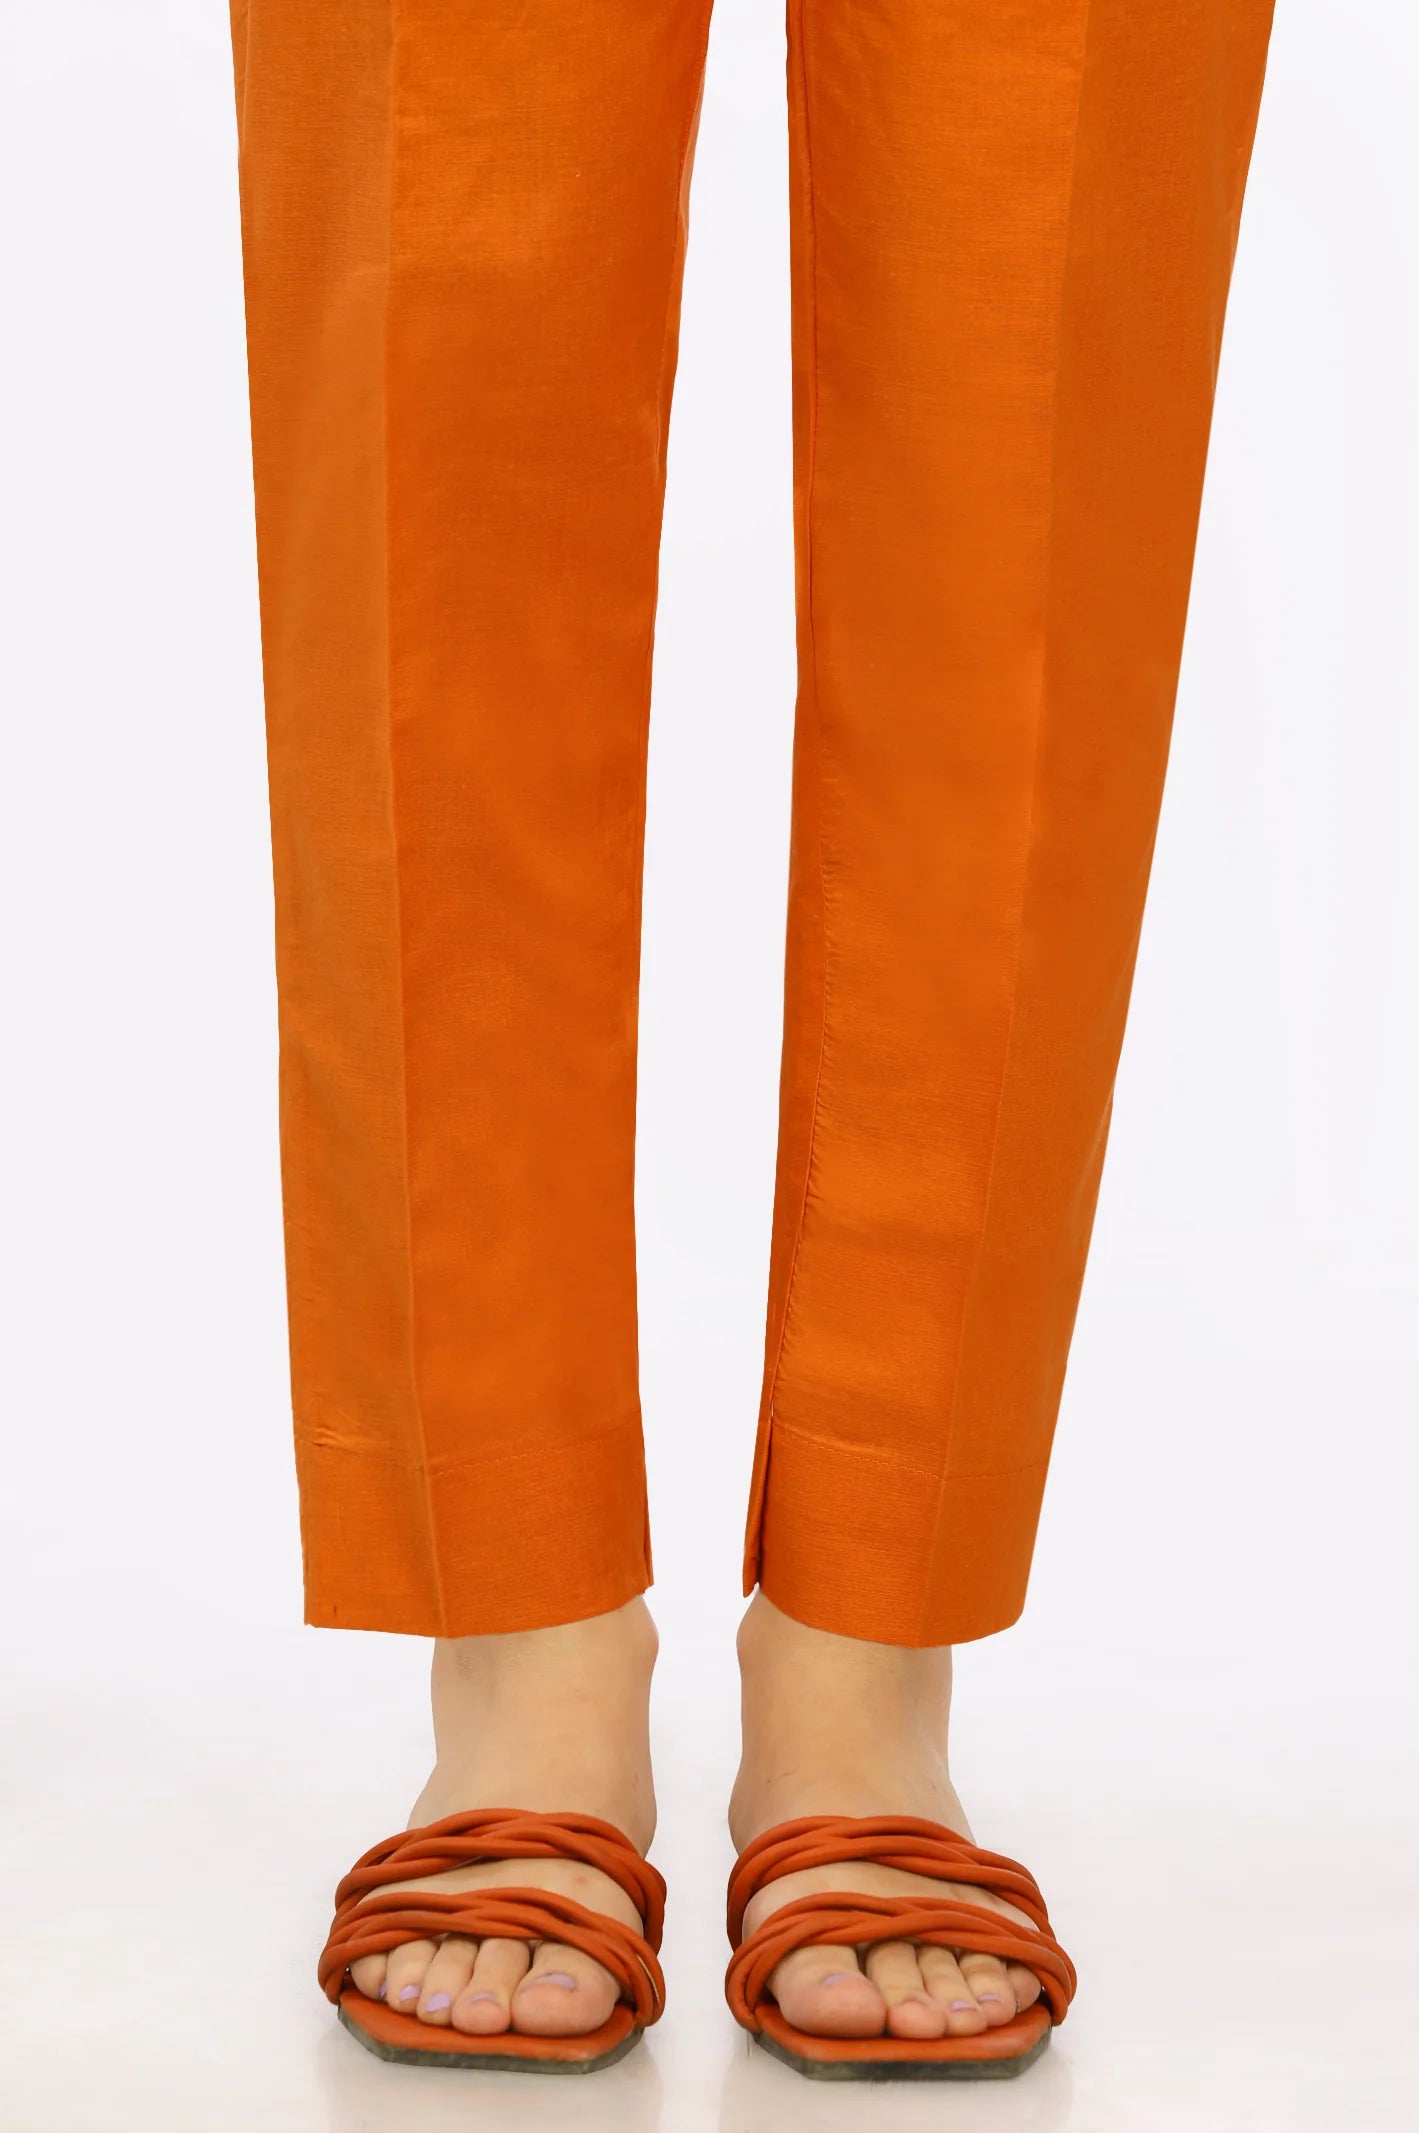 Orange Trouser